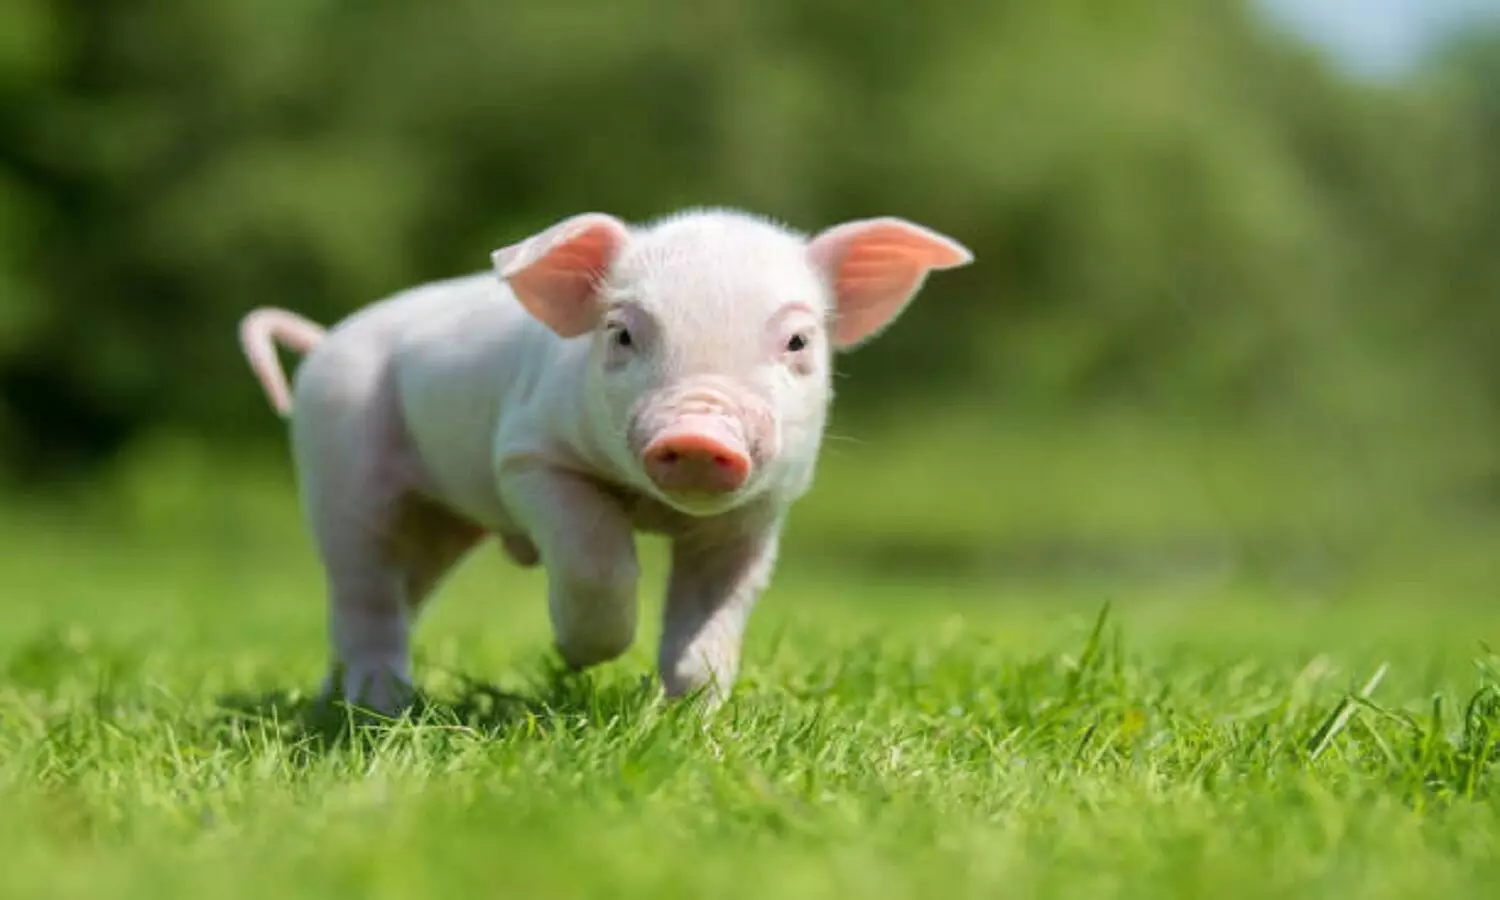 Pig Facts: सुअर कीचड़ में क्यों नहाते हैं? जानें कितने बुद्धिमान होते हैं सुअर